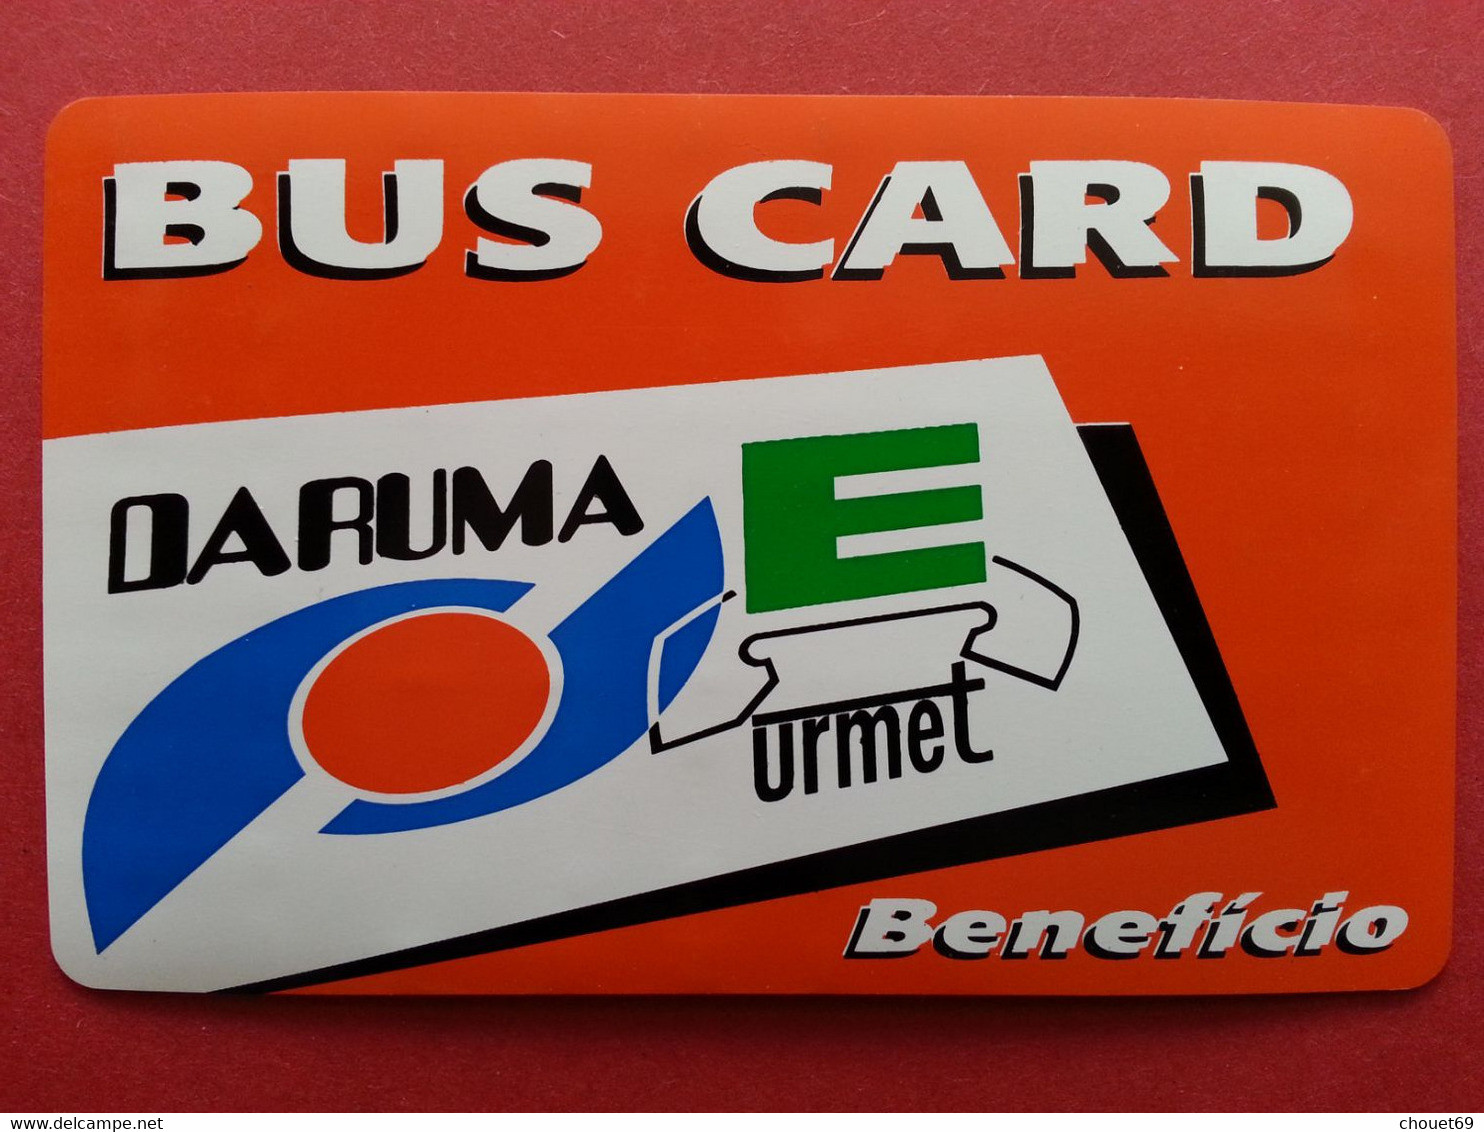 BUS CARD ORANGE Daruma URMET 10u Telephone Test Inductive Mint Unused Neuve (BA1019 - Tests & Service